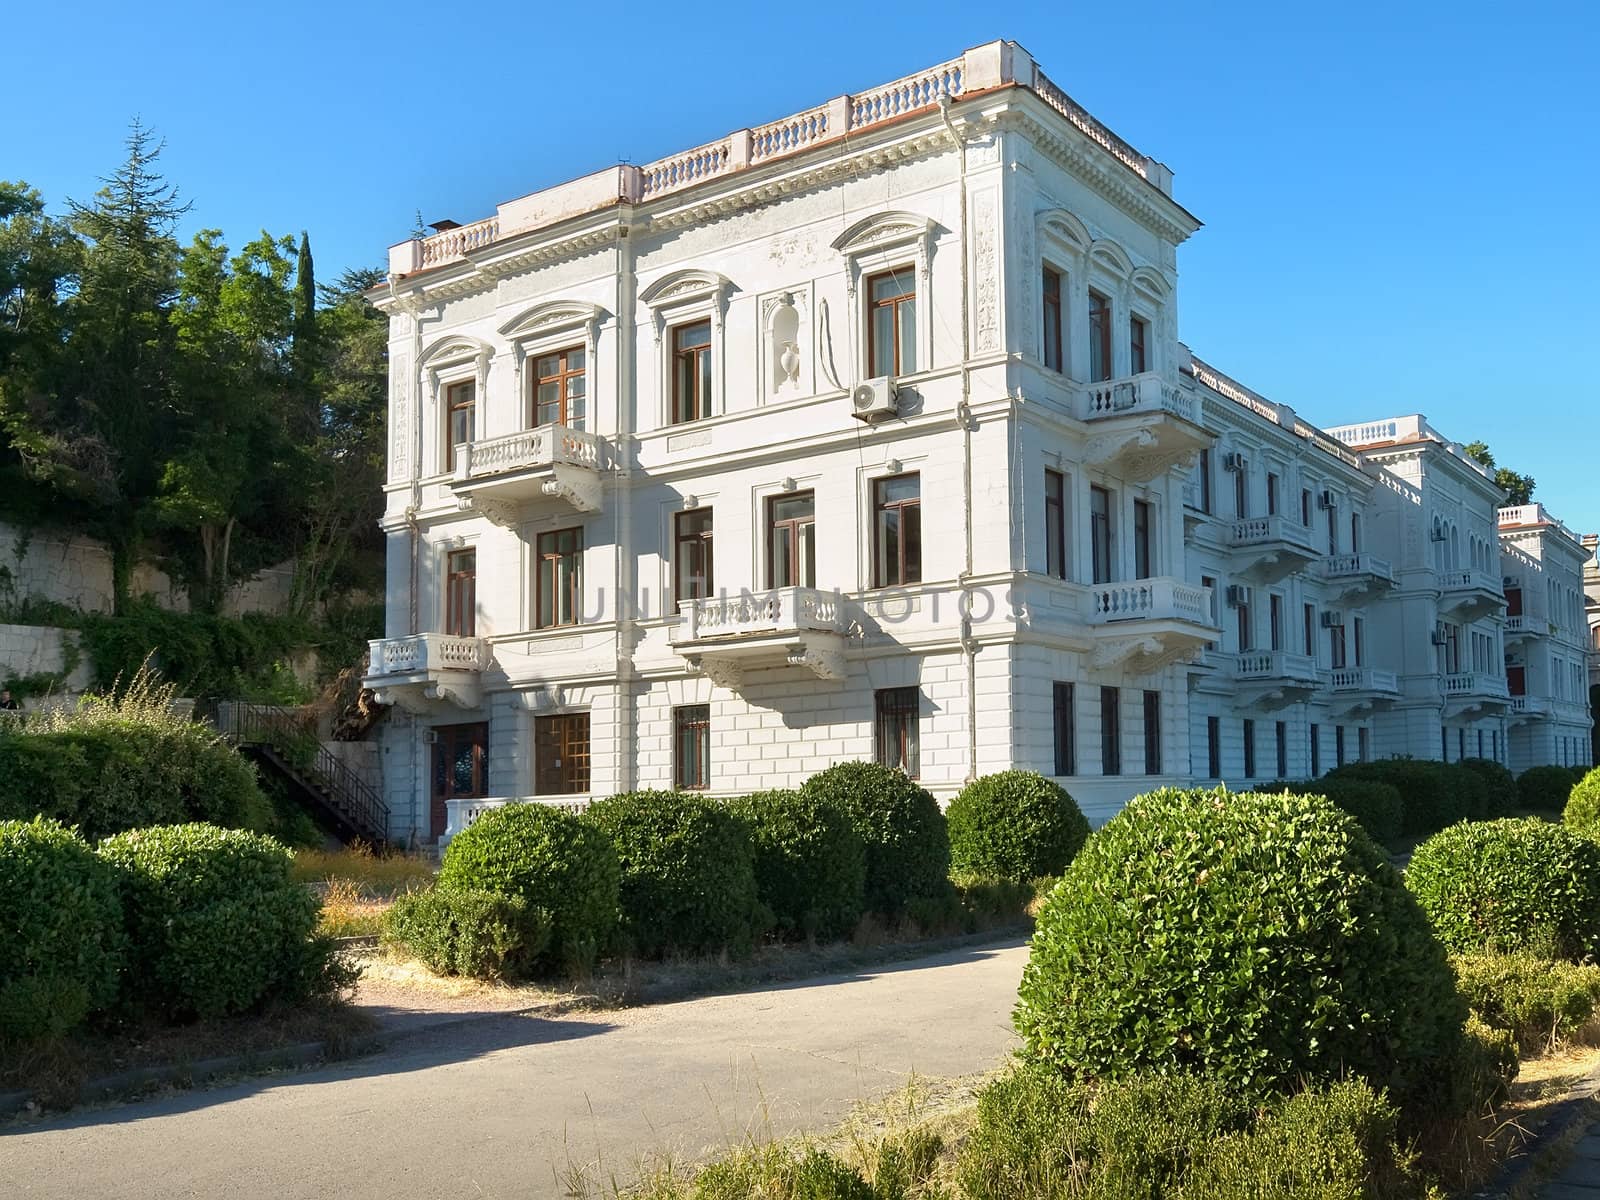 Livadia palace building in Yalta, Crimea by kvinoz